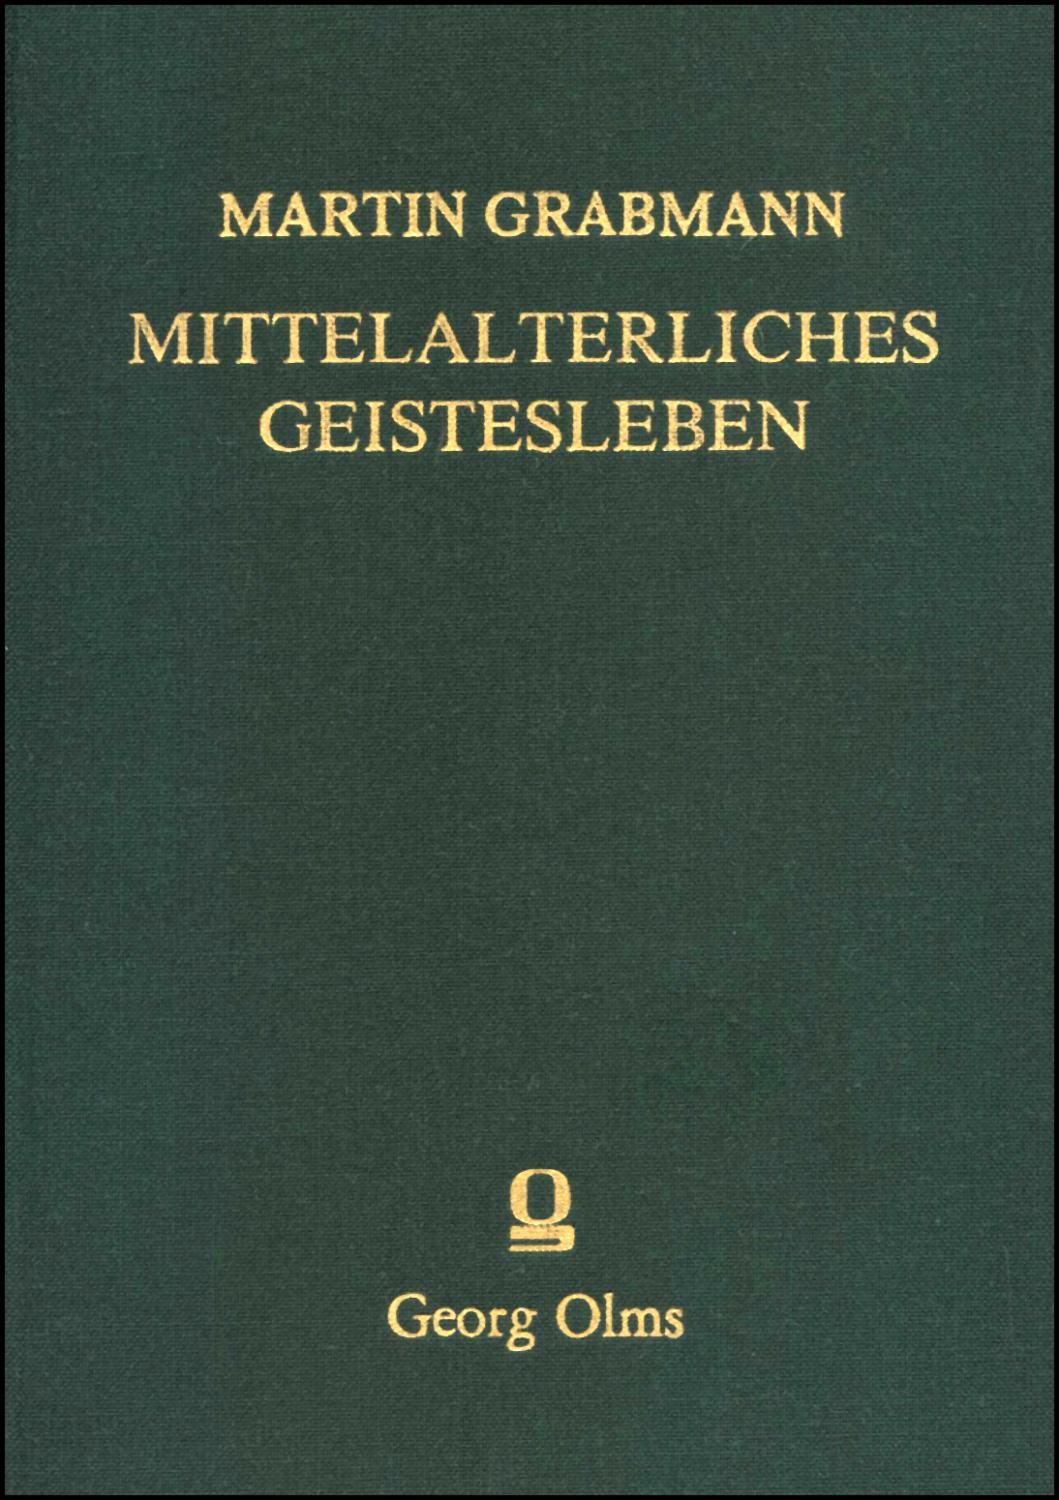 Mittelalterliches Geistesleben Abhandlungen zur Geschichte der Scholastik und Mystik. Band 3. Mit einer Bibliographie Martin Grabmanns. Hrsg. Ludwig Ott.München 1956. 2. Reprint: Hildesheim 1984. XIII/479 S.